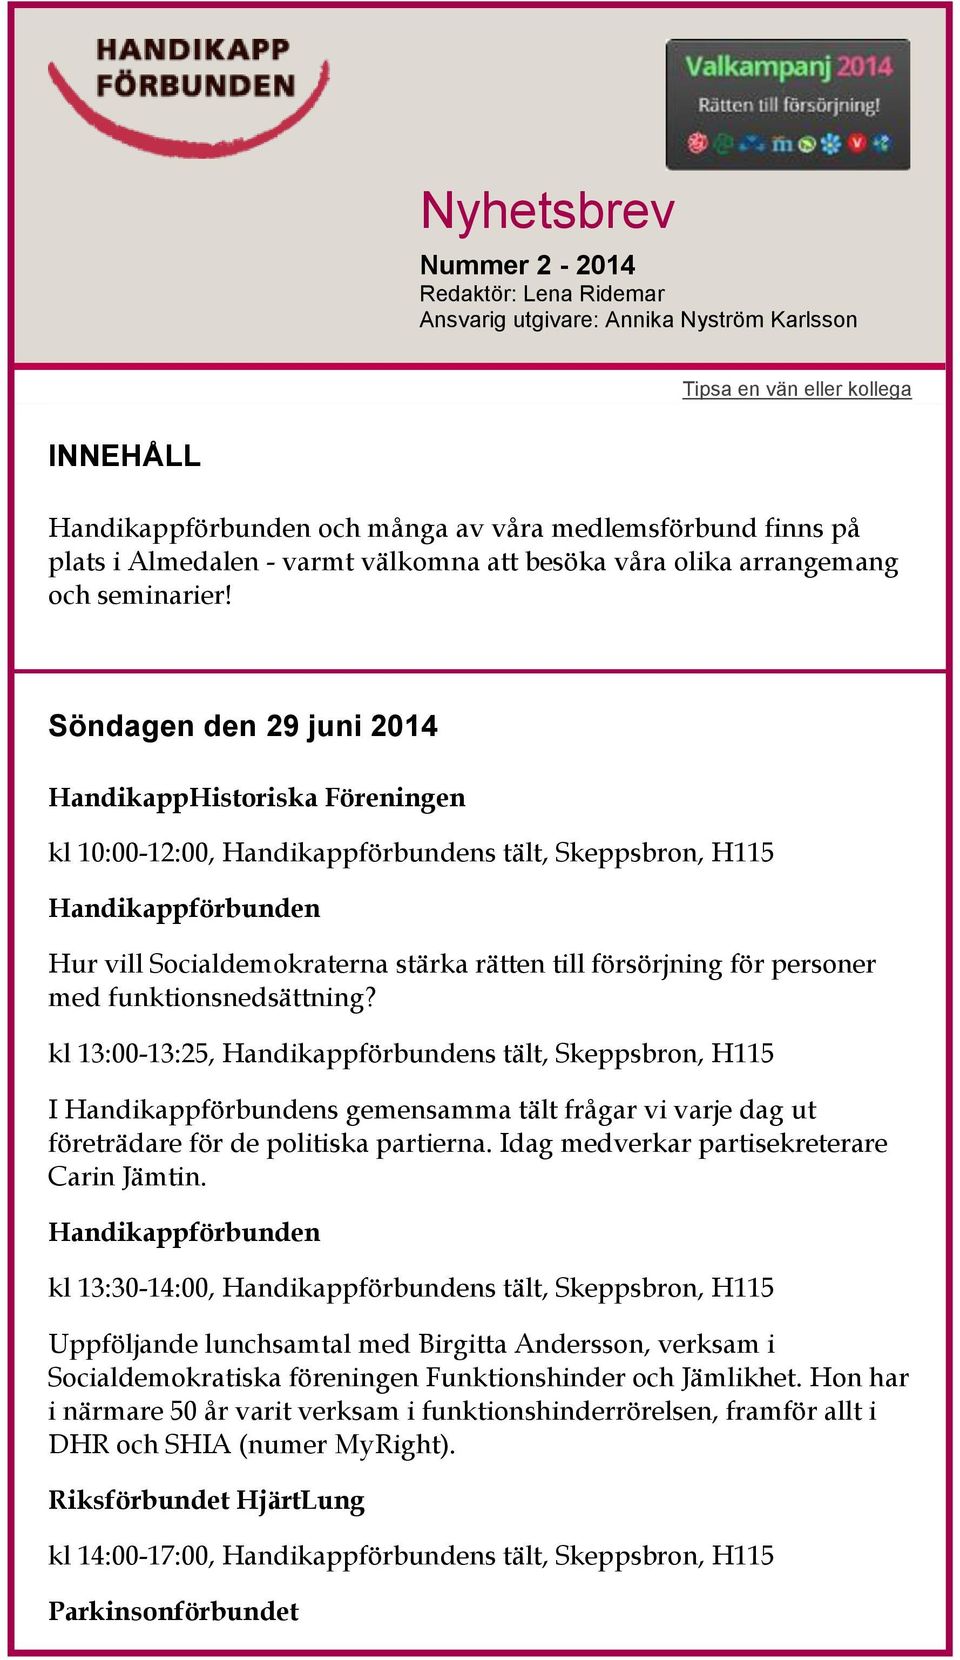 Söndagen den 29 juni 2014 HandikappHistoriska Föreningen kl 10:00-12:00, s tält, Skeppsbron, H115 Hur vill Socialdemokraterna stärka rätten till försörjning för personer med funktionsnedsättning?